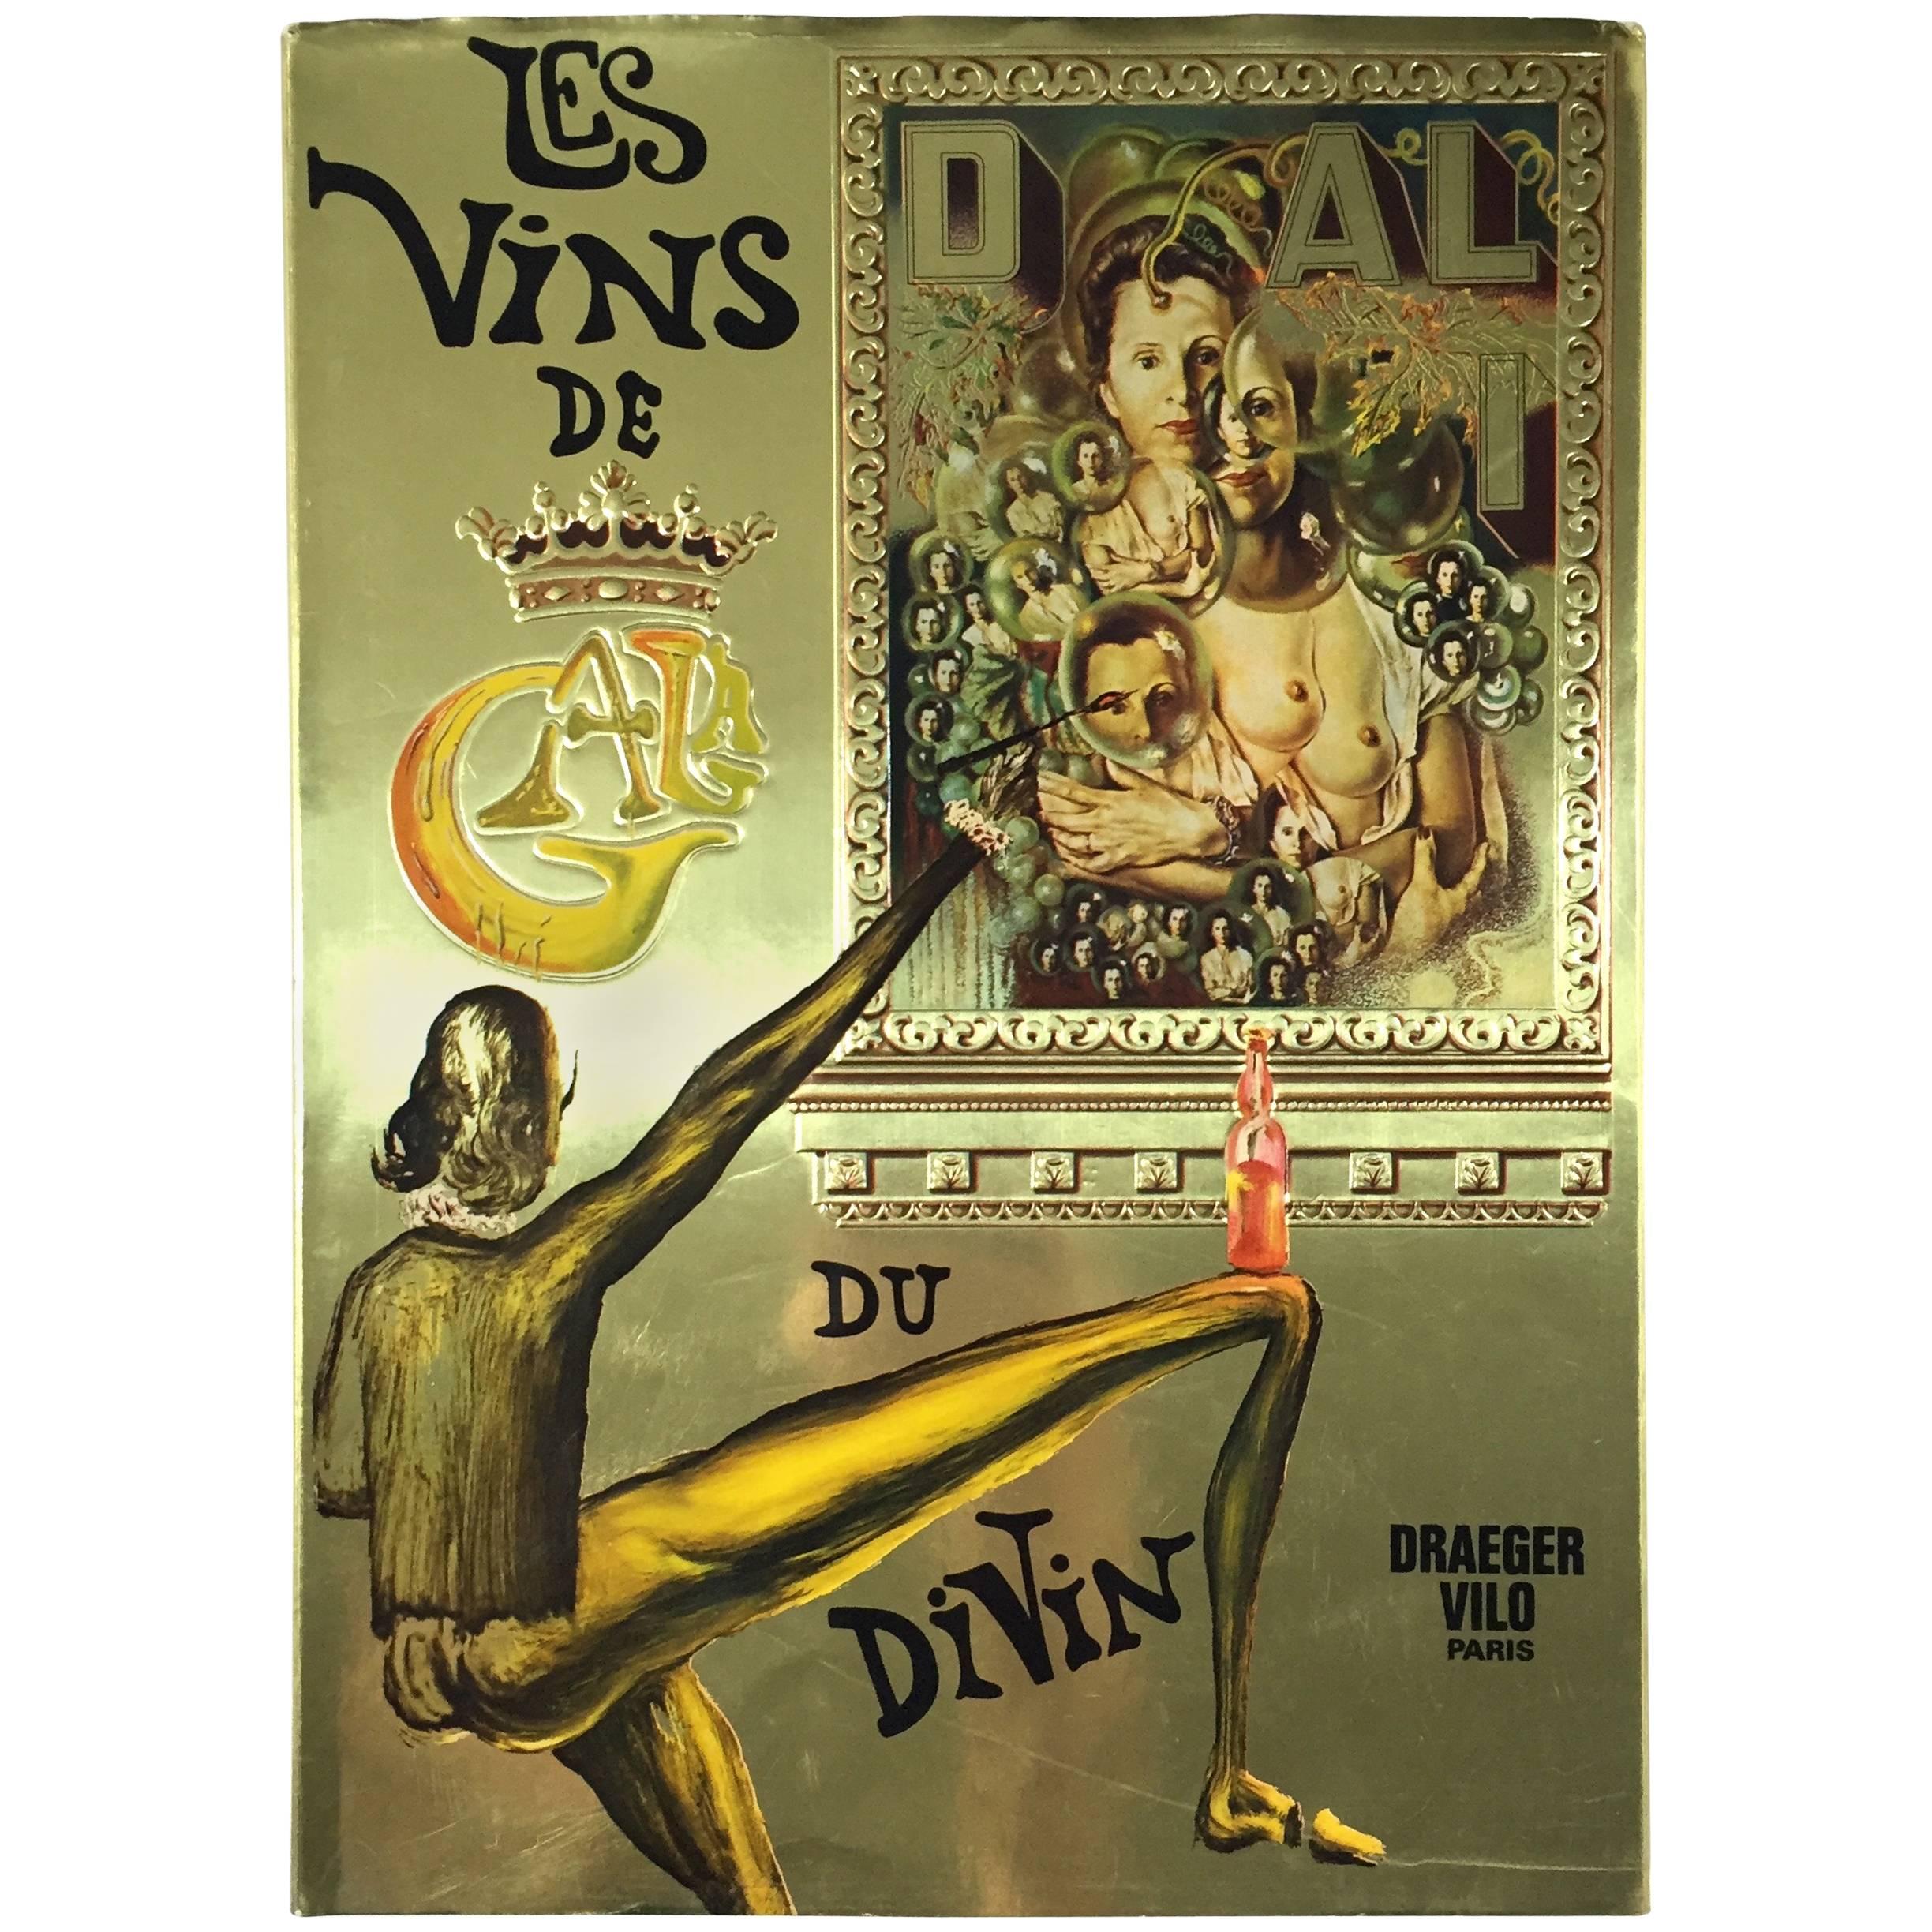 "Dali - Les Vins de Gala" Book - 1977